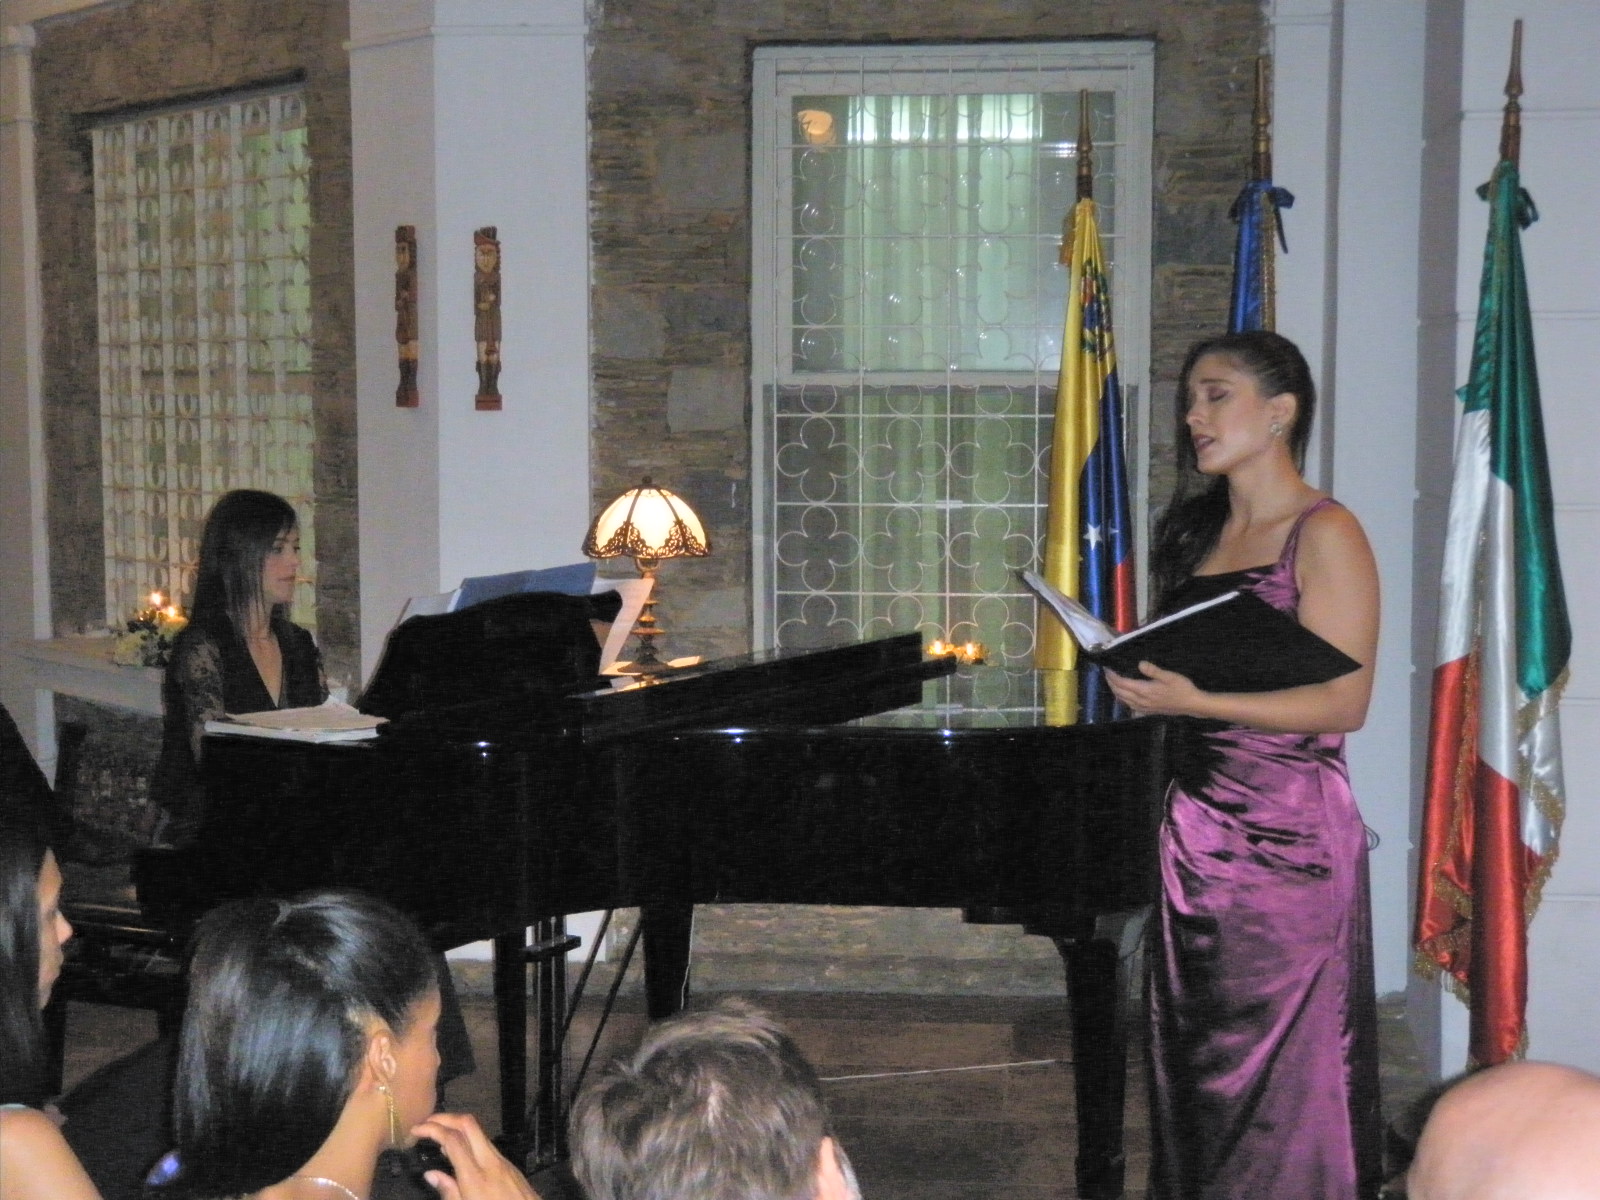 La residencia del Embajador de Italia en Caracas, abrió sus puertas para ofrecer un íntimo concierto, donde una voz y un piano fueron los protagonistas de la noche. El recital formó parte de las actividades programadas en la Semana de la Lengua Italiana que se desarrollaron en Venezuela.